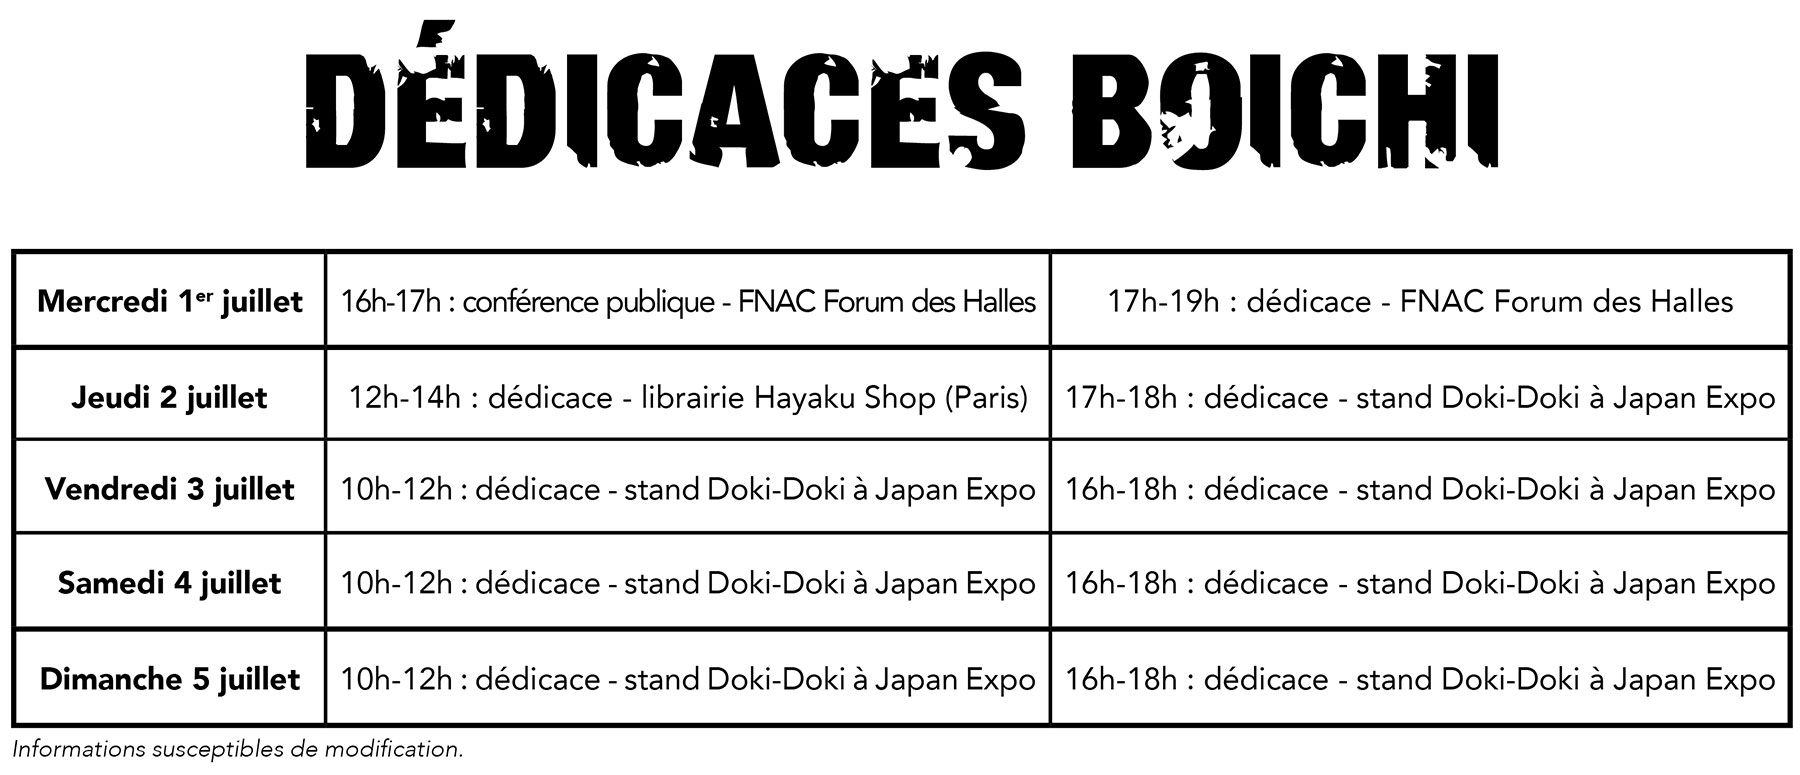 Japan Expo 16 du 2 au 5 juillet 2015 Dedicaces-boichi